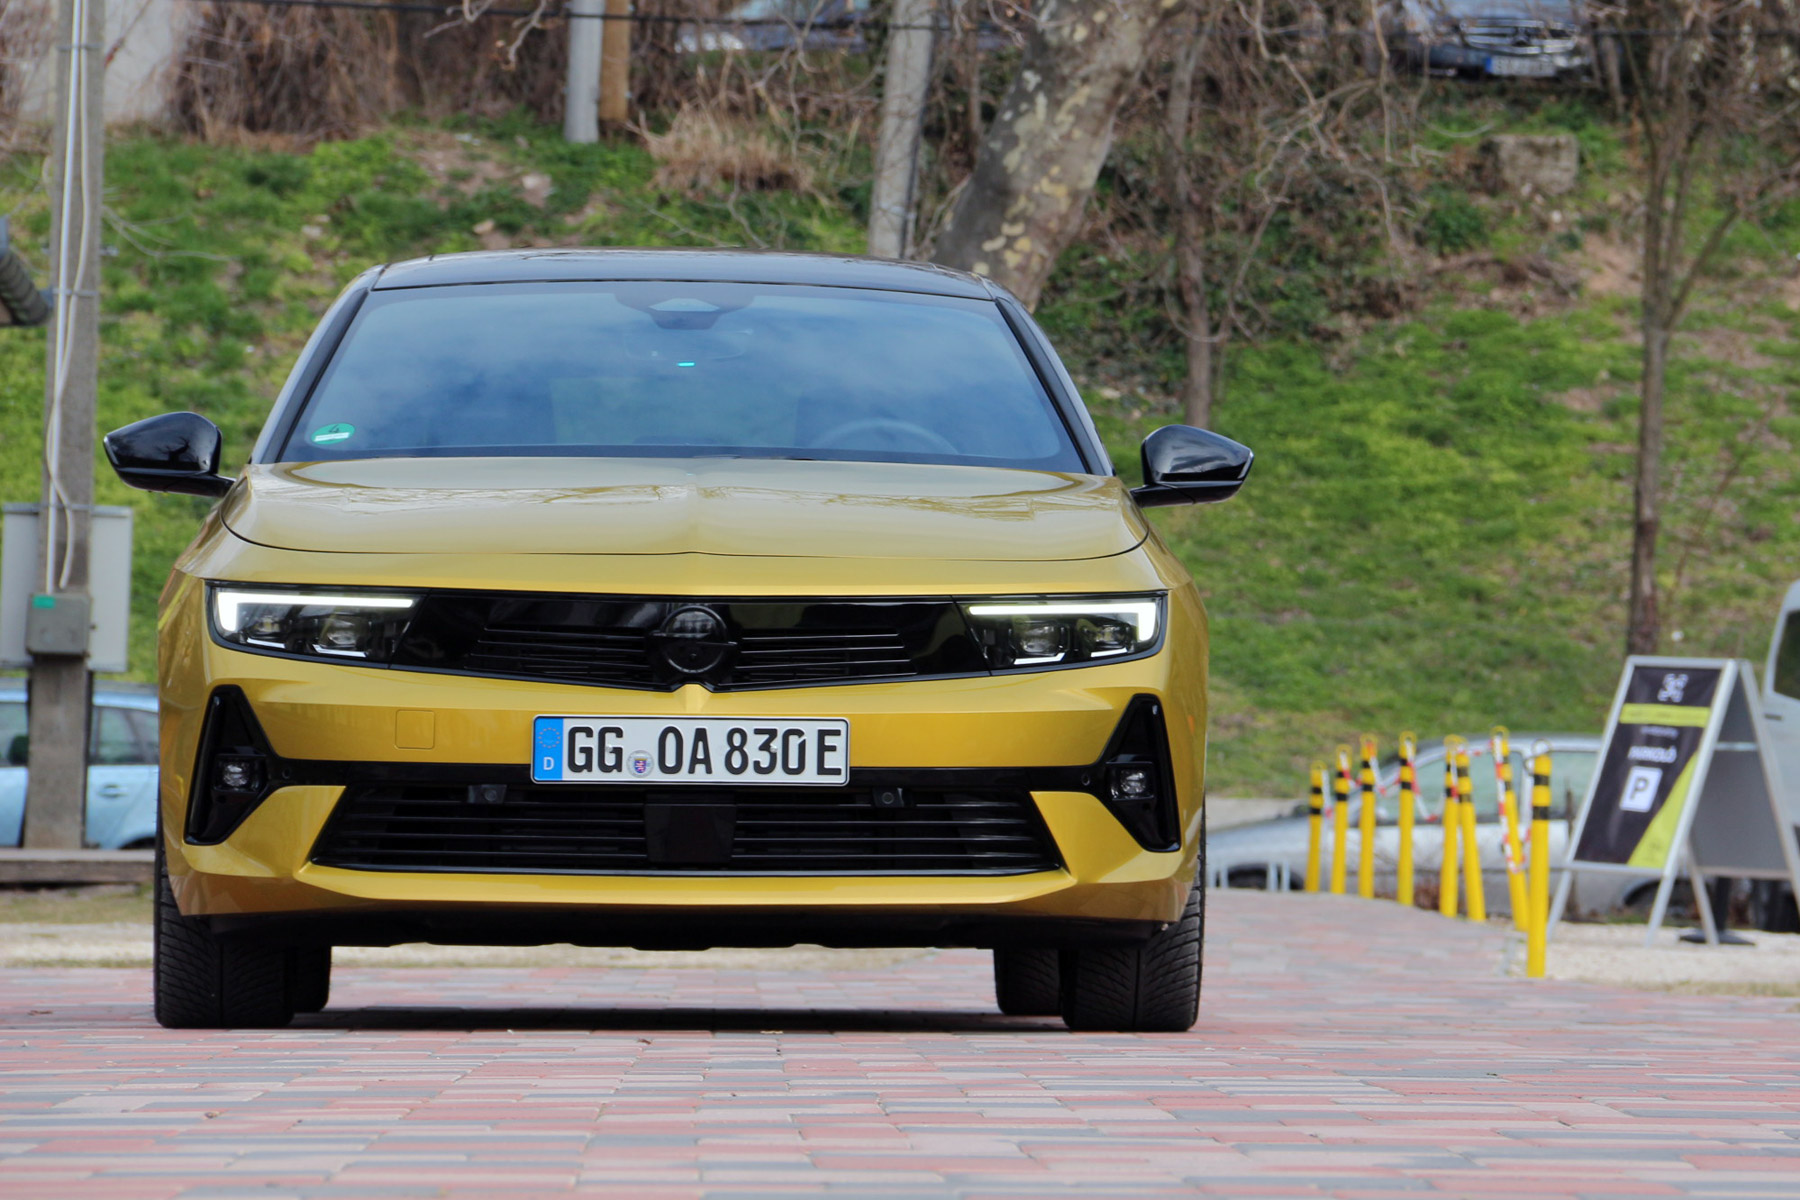 Mit mutat az új Opel Astra magyar utakon? 85